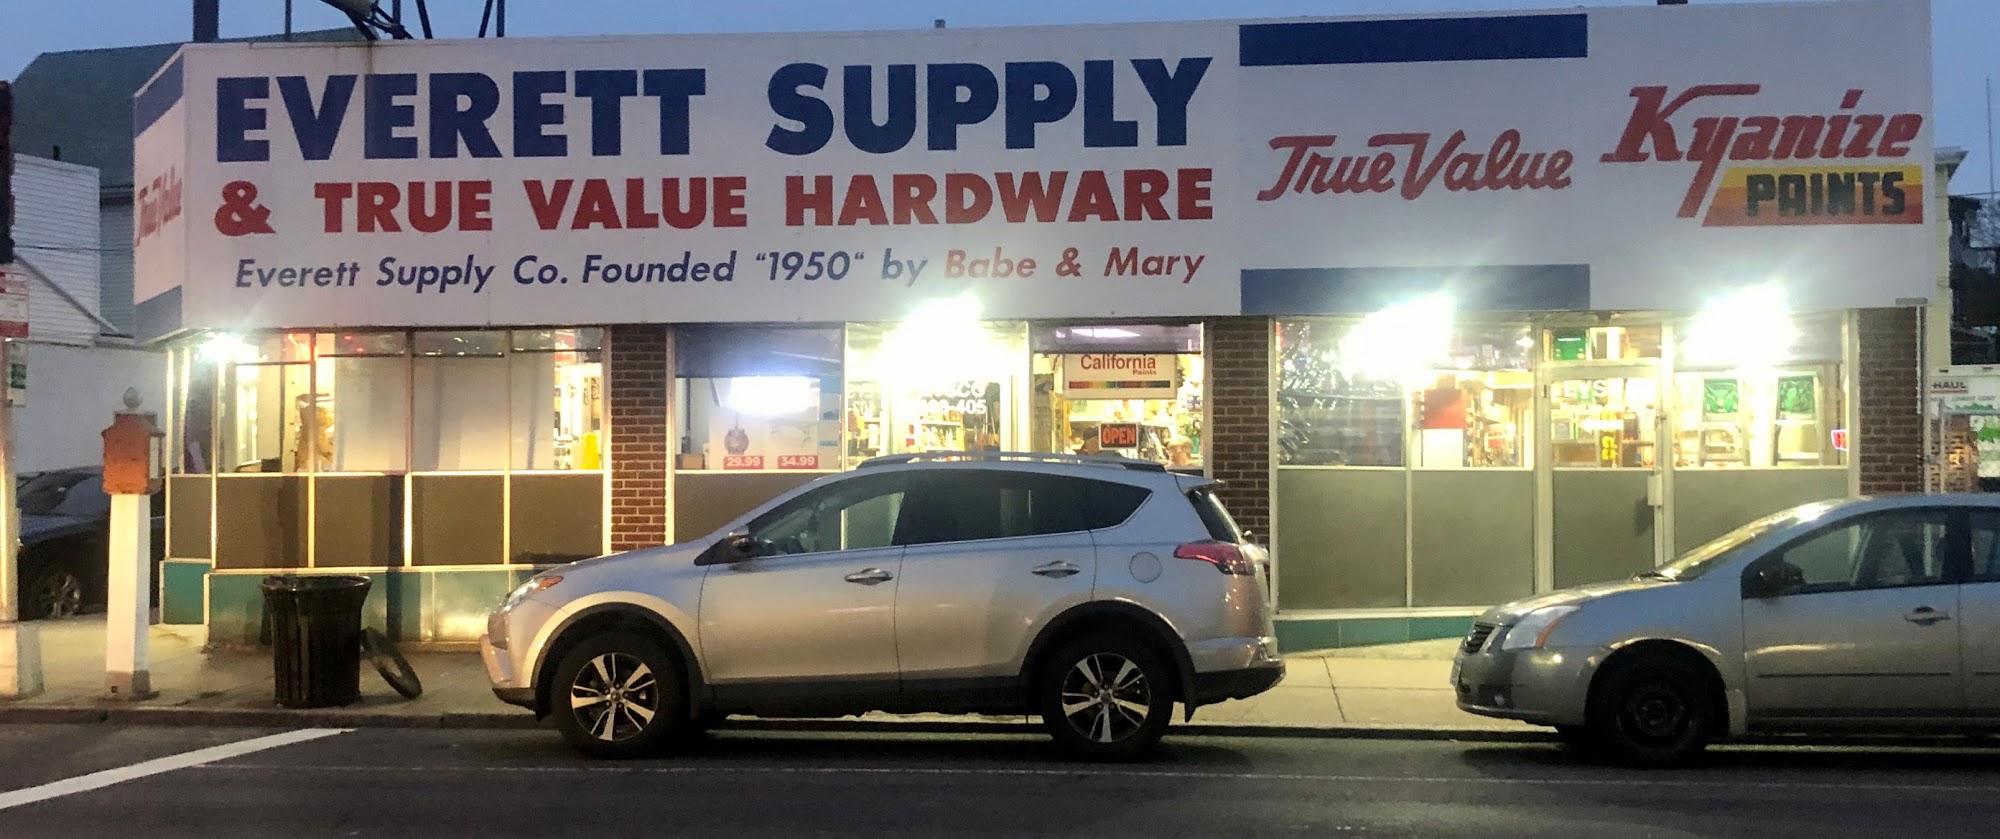 Everett Supply & True Value Hardware